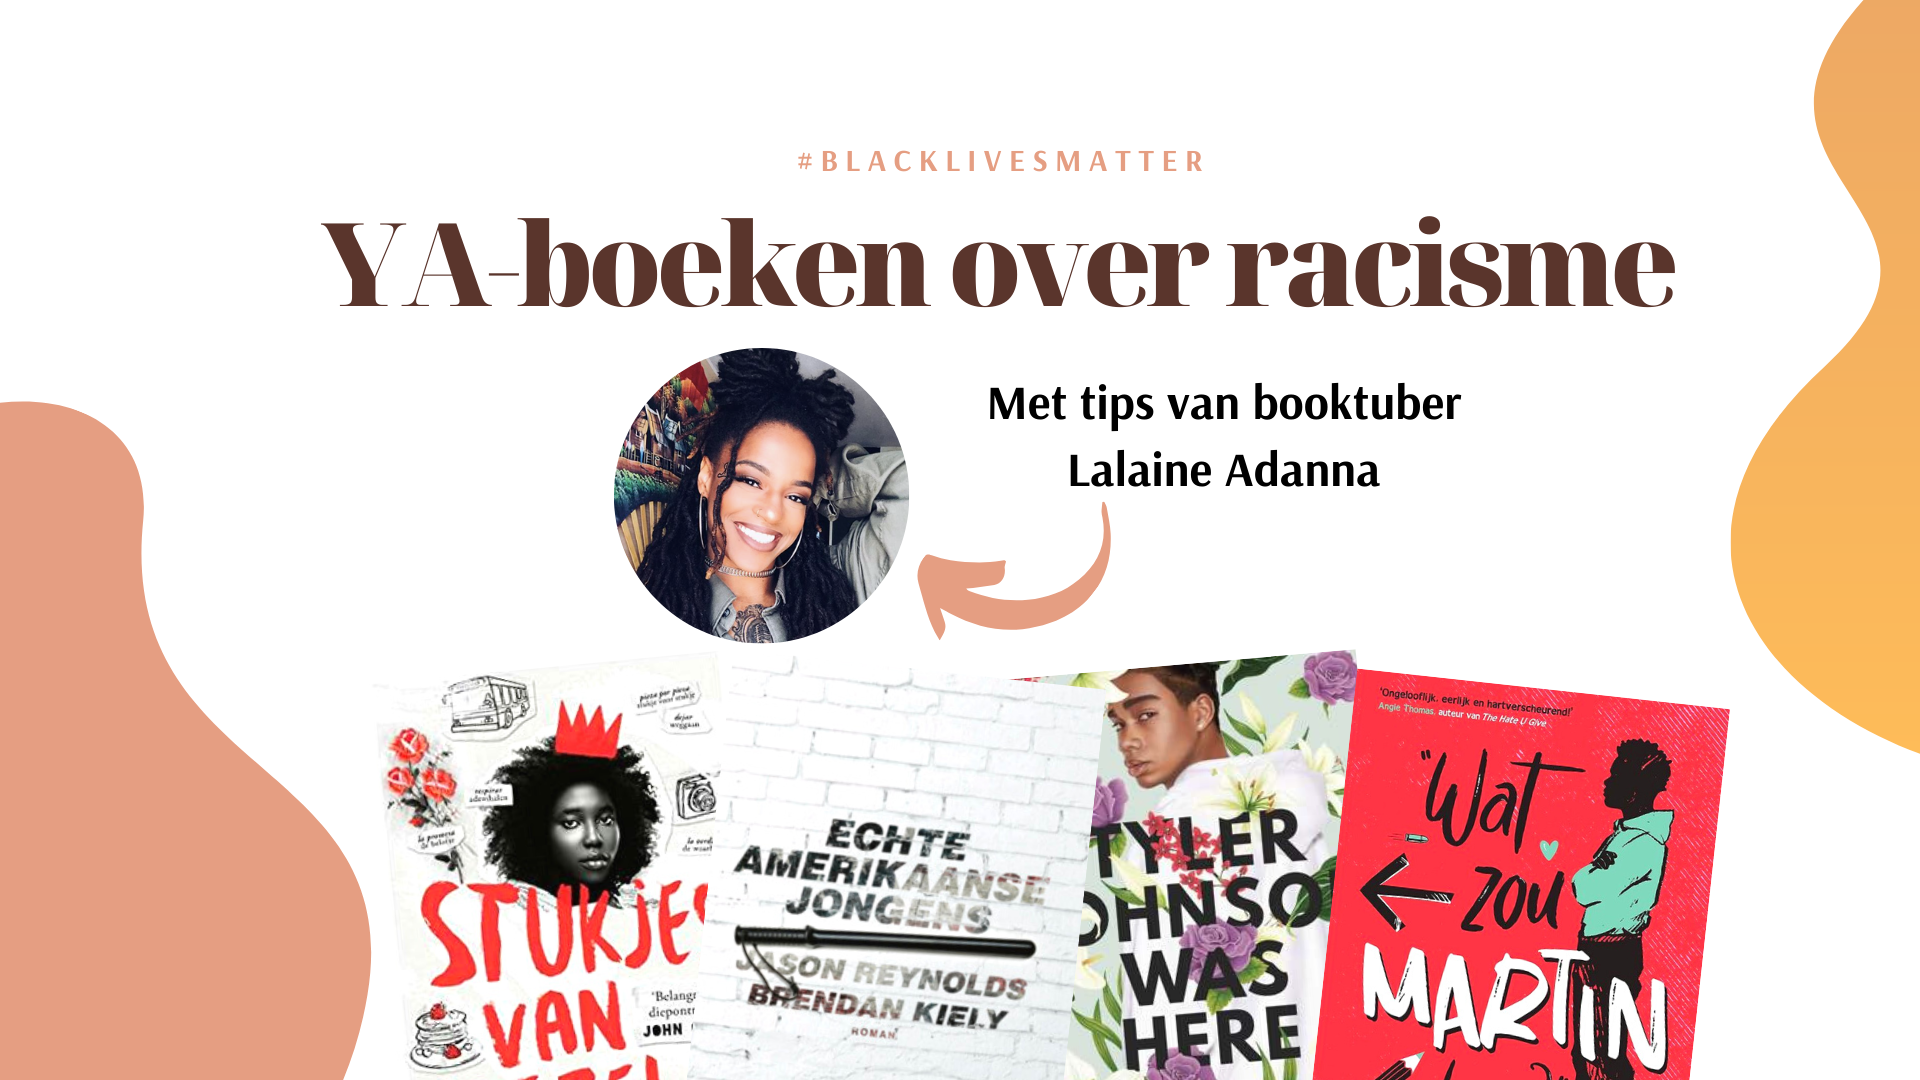 Educate yourself: YA-boeken over racisme